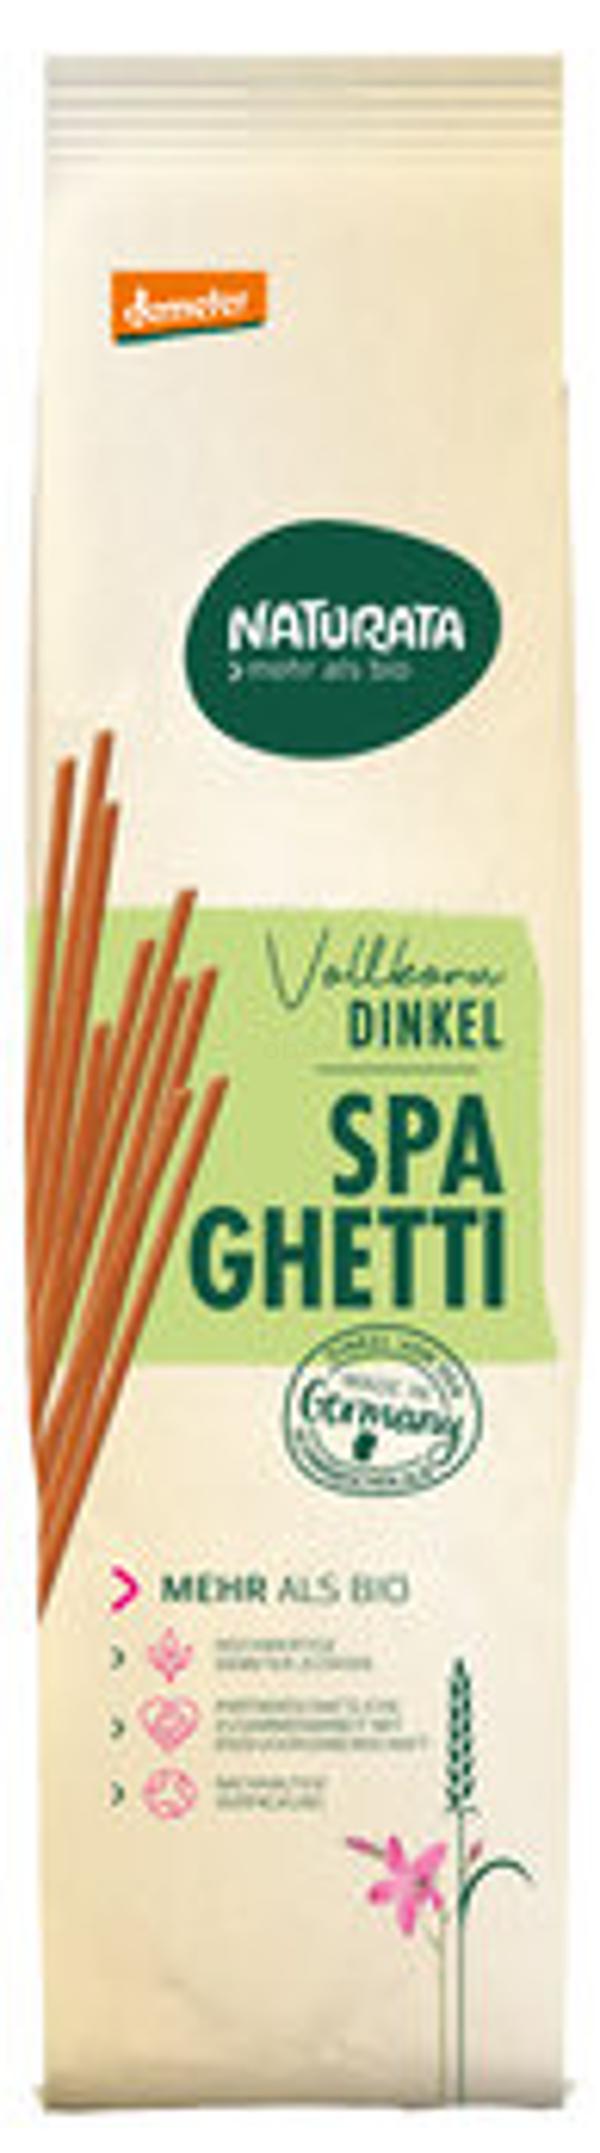 Produktfoto zu Dinkel Vollkorn Spaghetti 500g